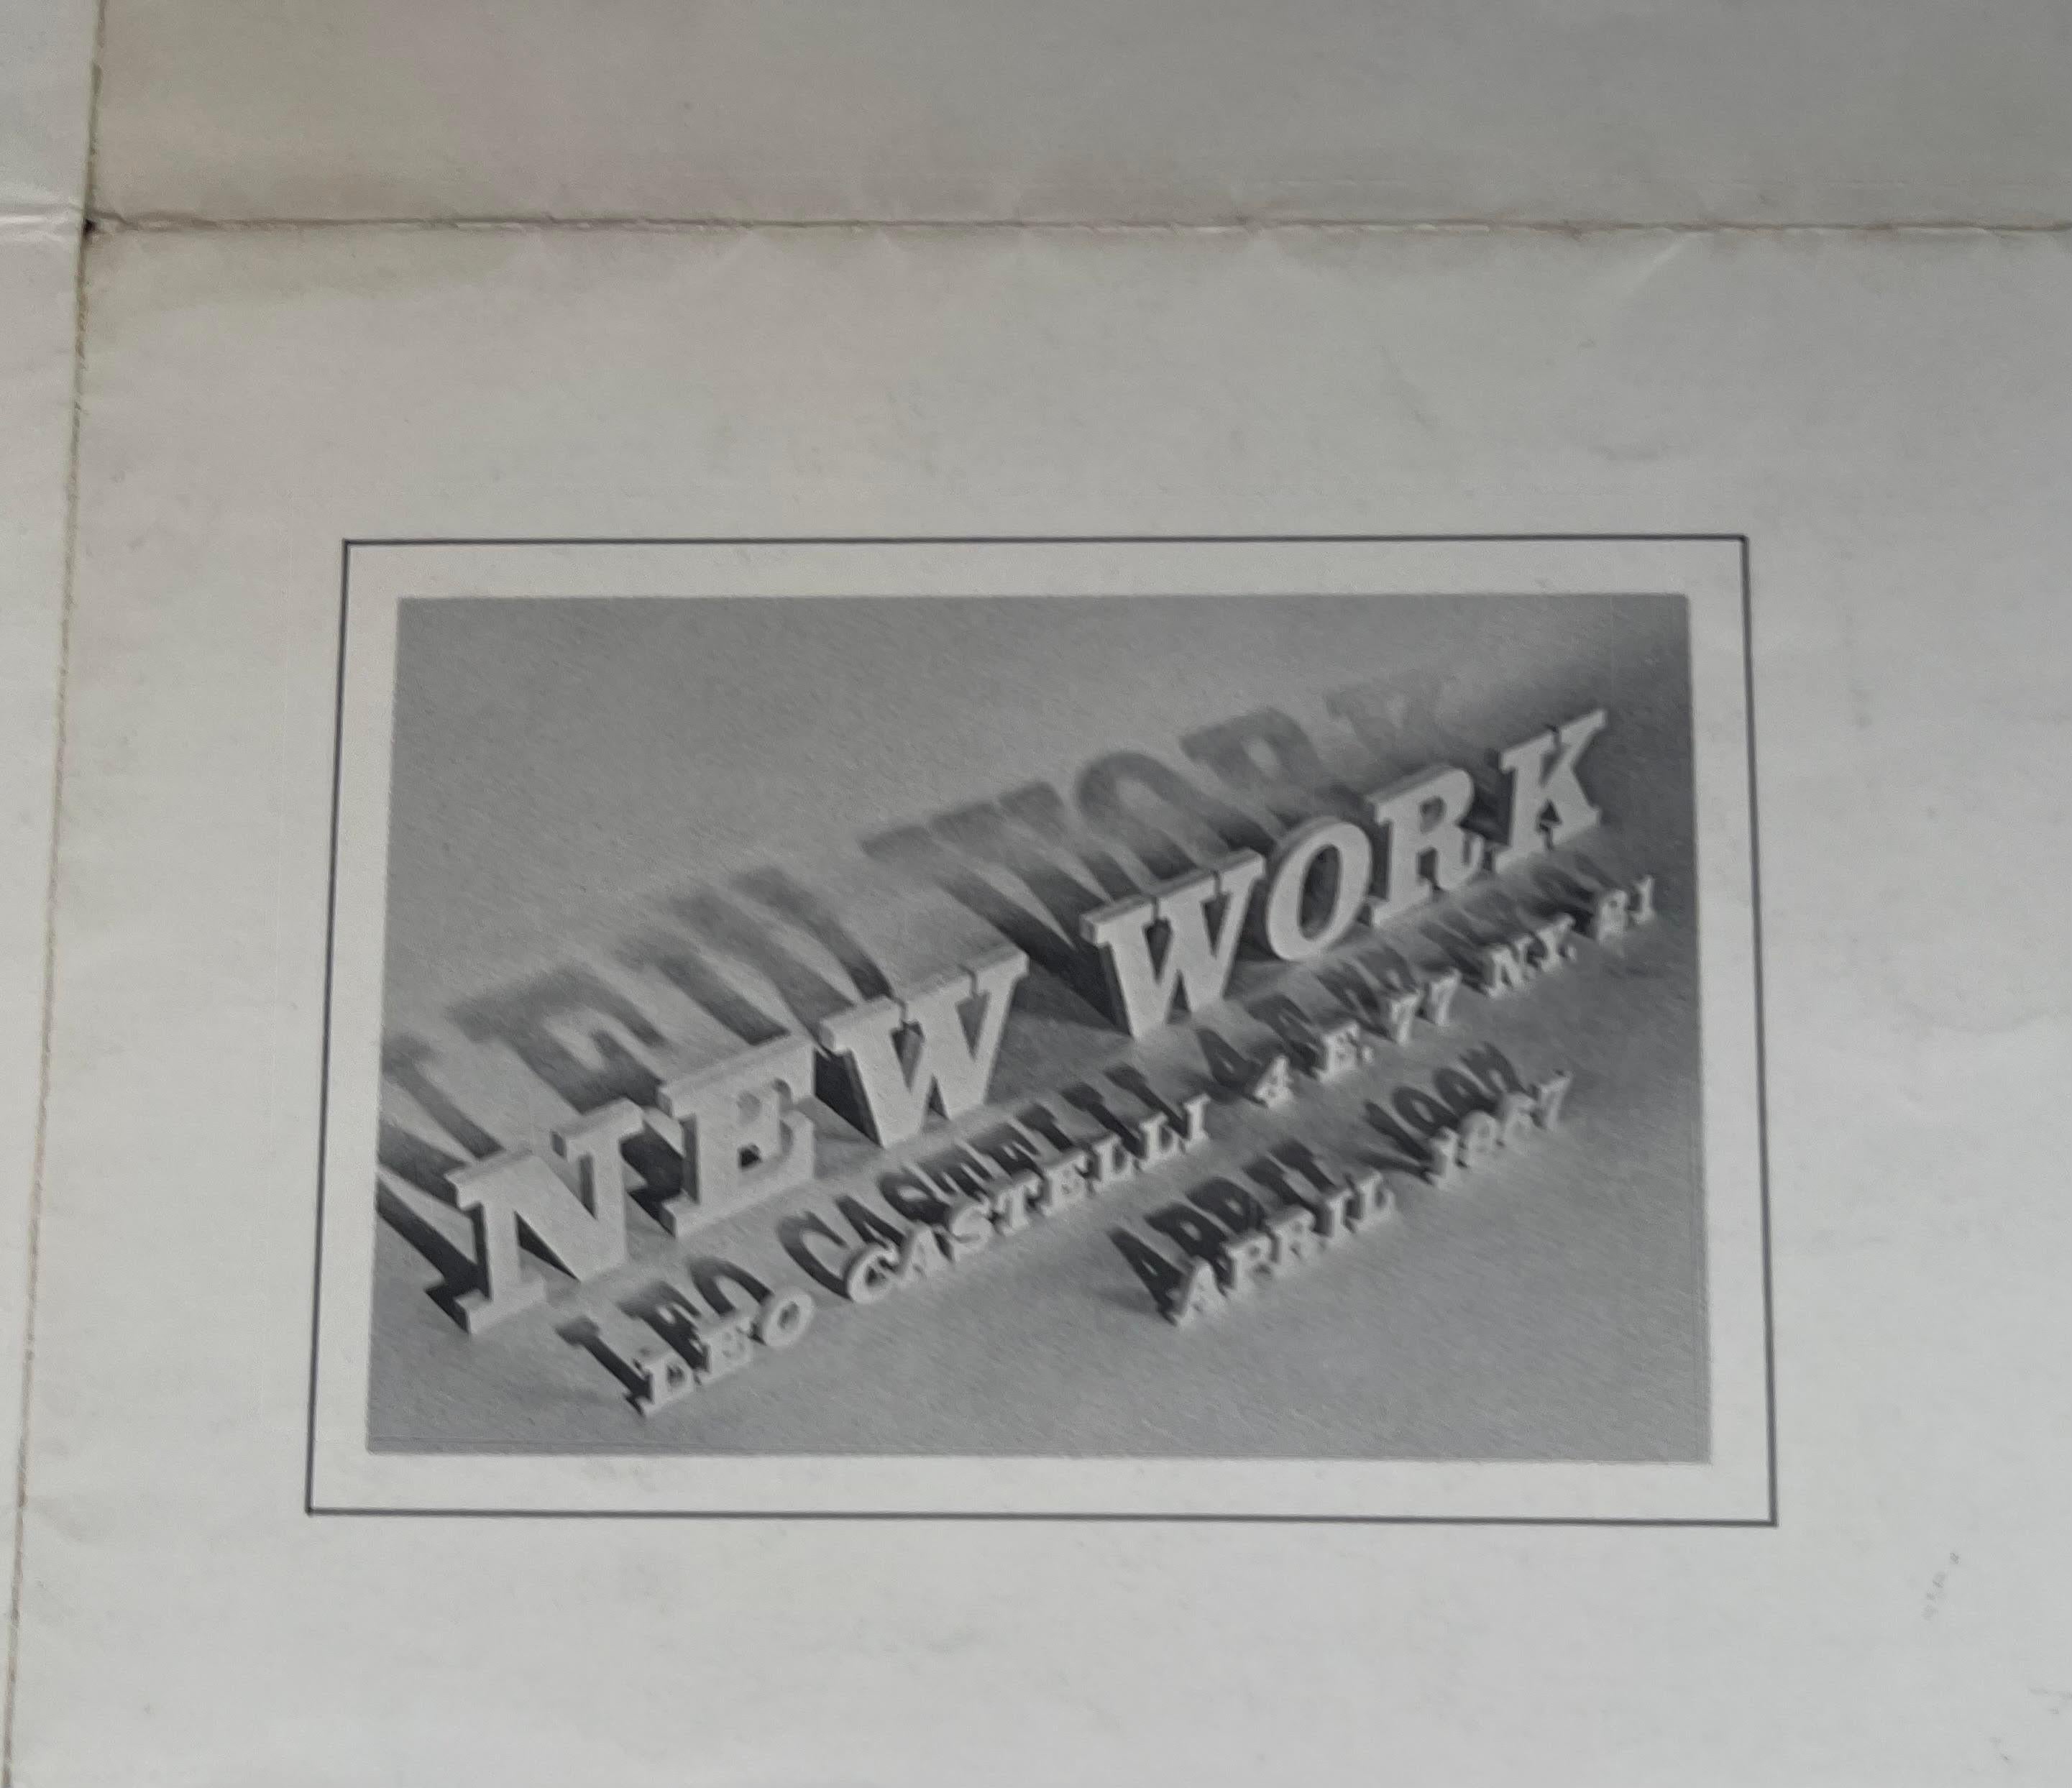 Pièce de collection rare :
Roy Lichtenstein, Frank Stella, John Chamberlain
New Work, affiche de Leo Castelli, 1967
Invitation à l'affiche lithographiée en offset avec plis d'origine, destinataire et cachet de la poste.
14 1/2 × 22 pouces
Non